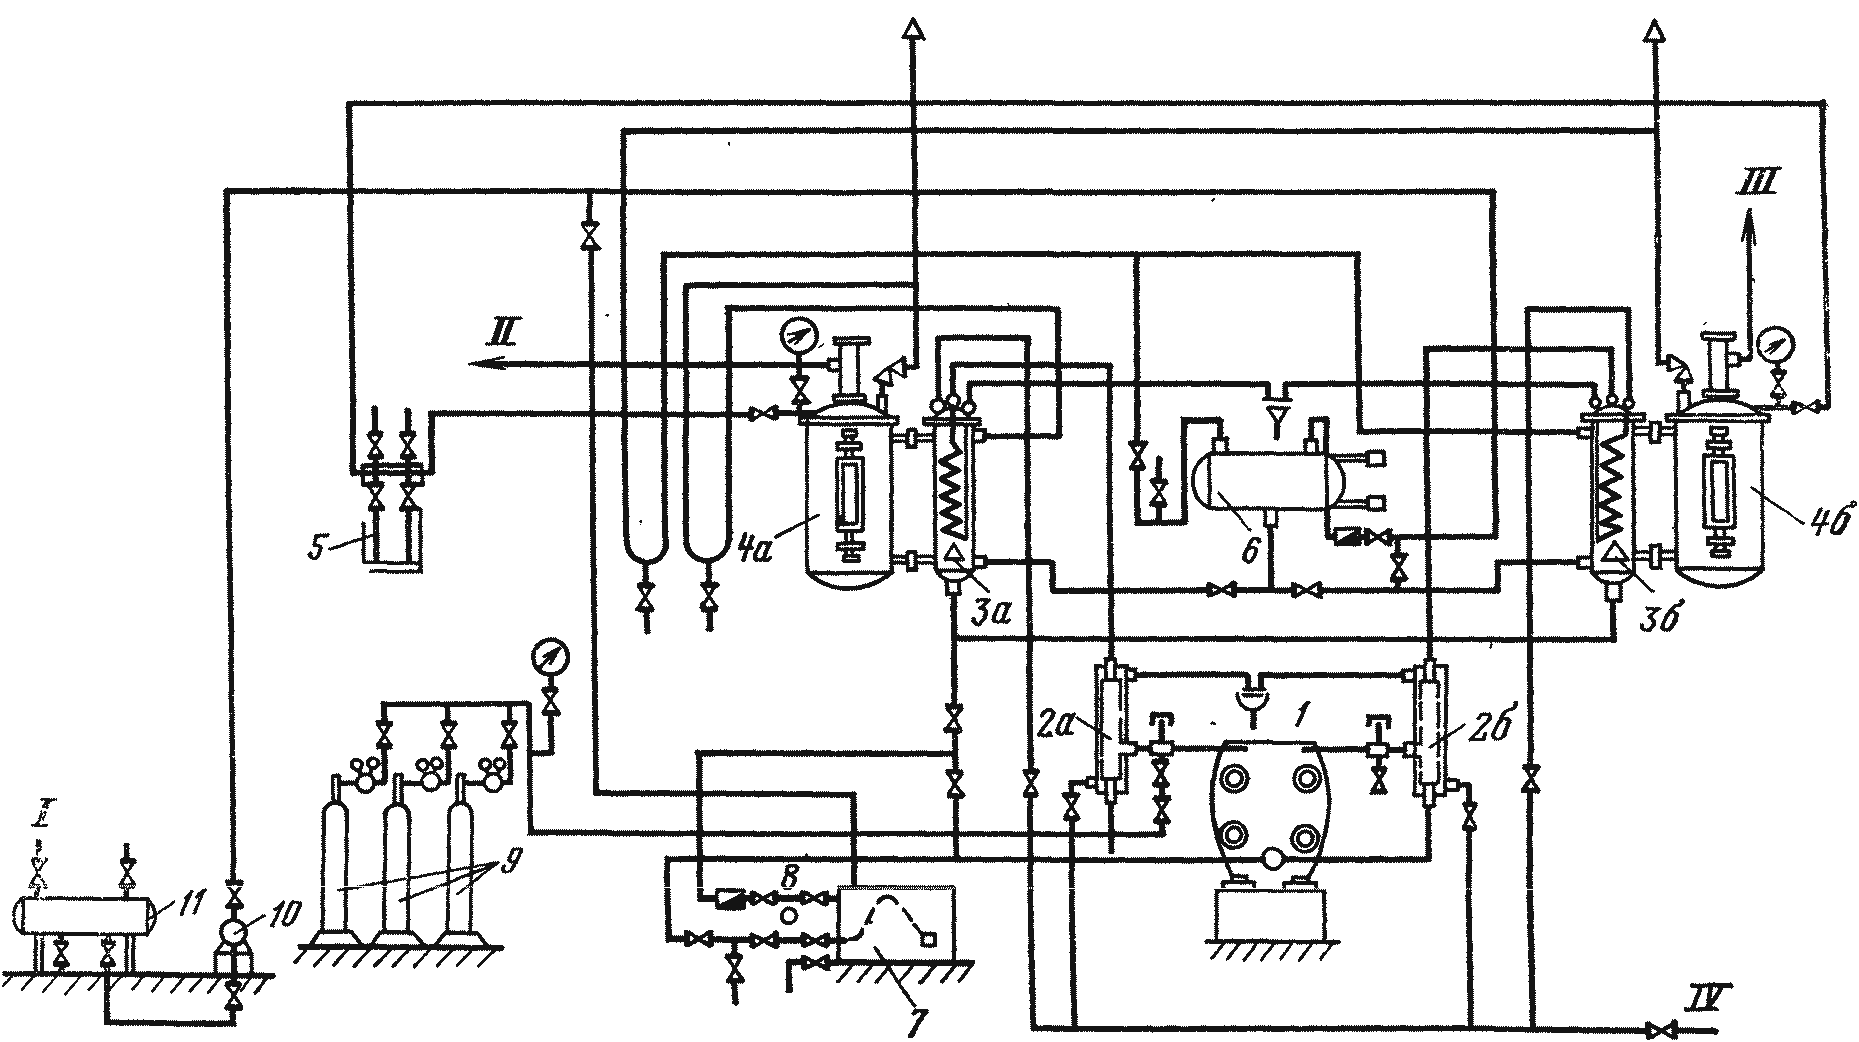 Схема электролизной установки